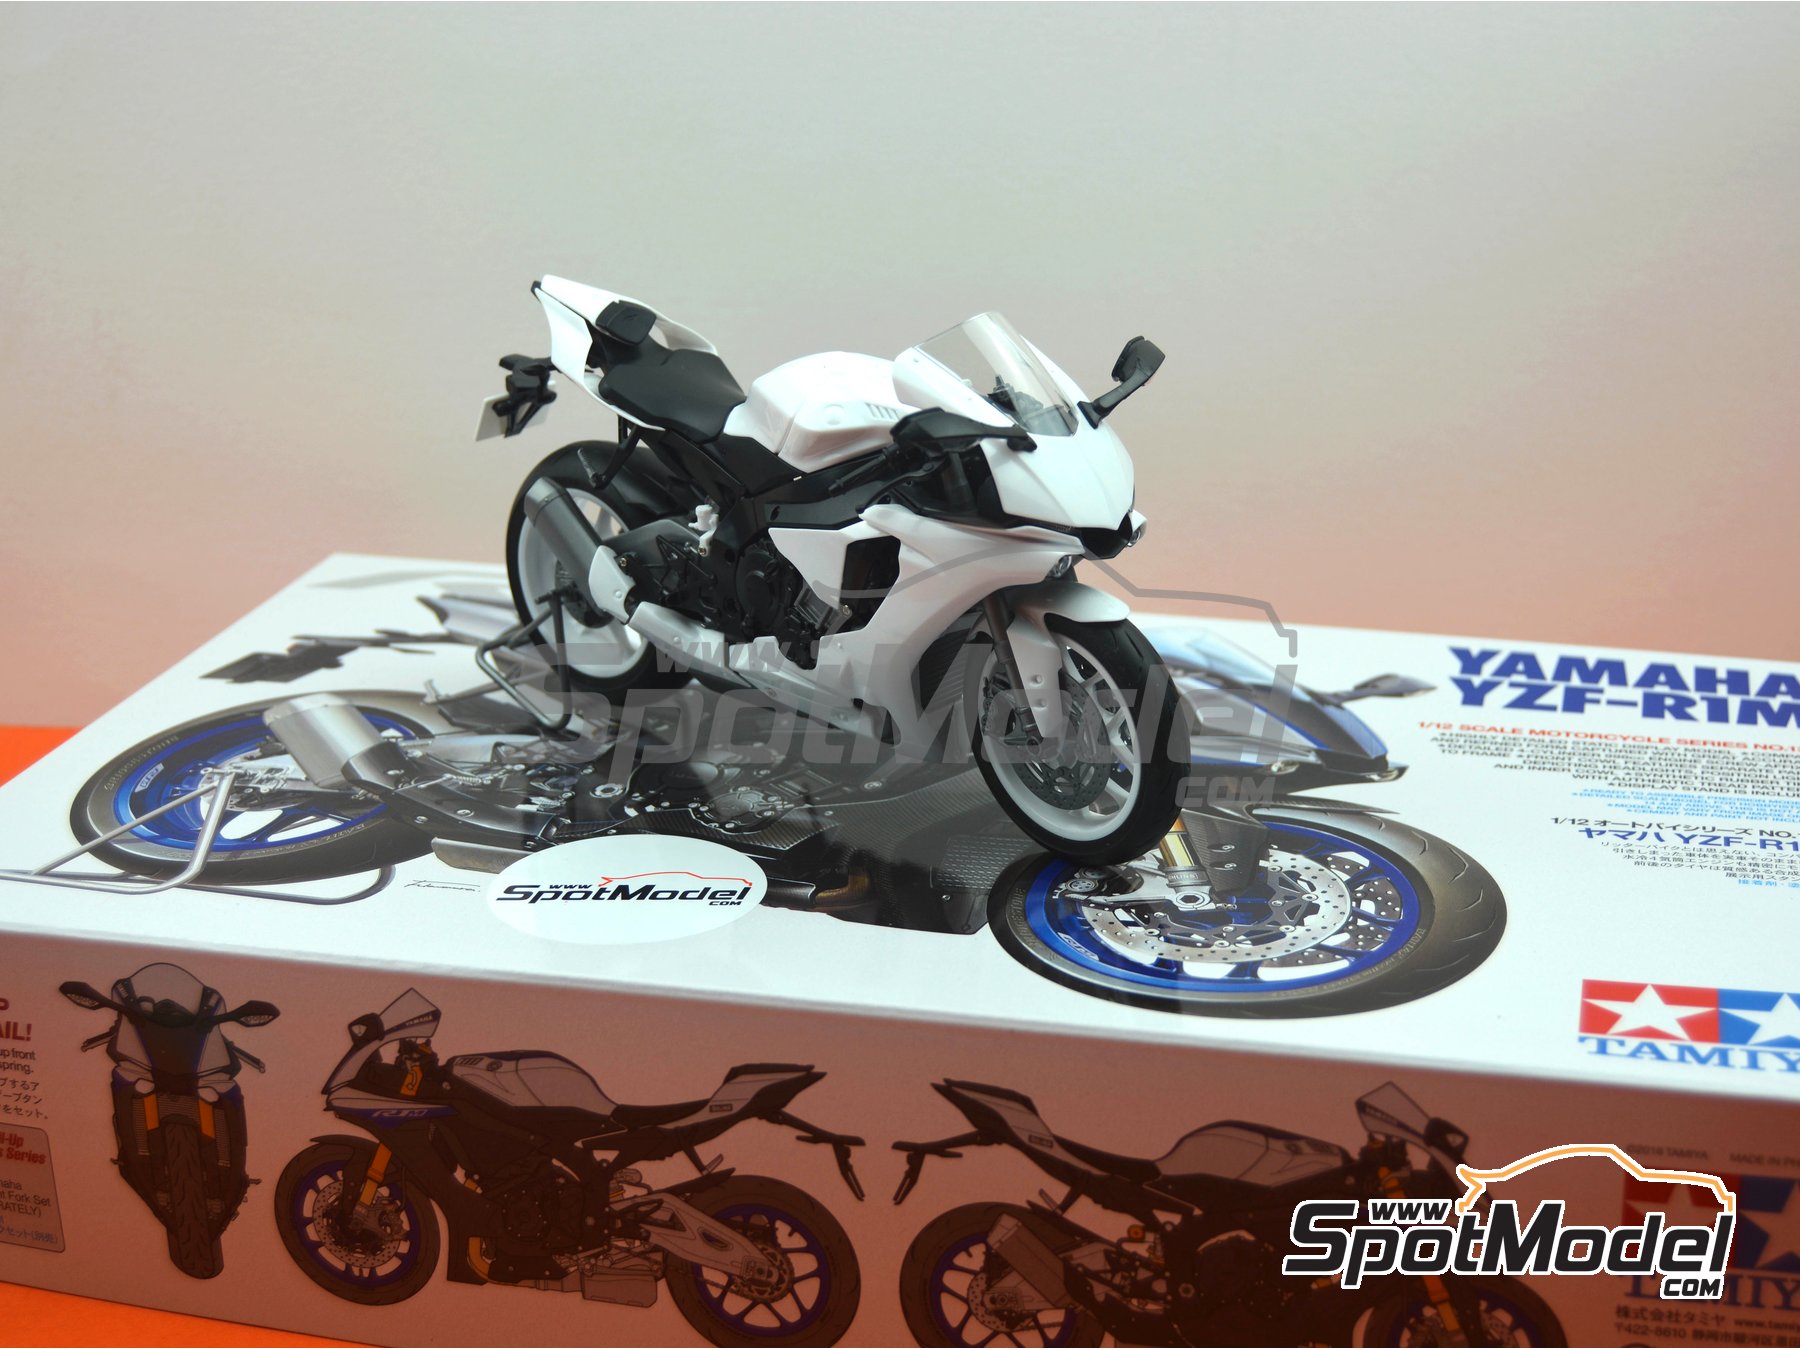 Tamiya 1/12 motorcycle series No.133 Yamaha YZF-R1M Model kit 14133 